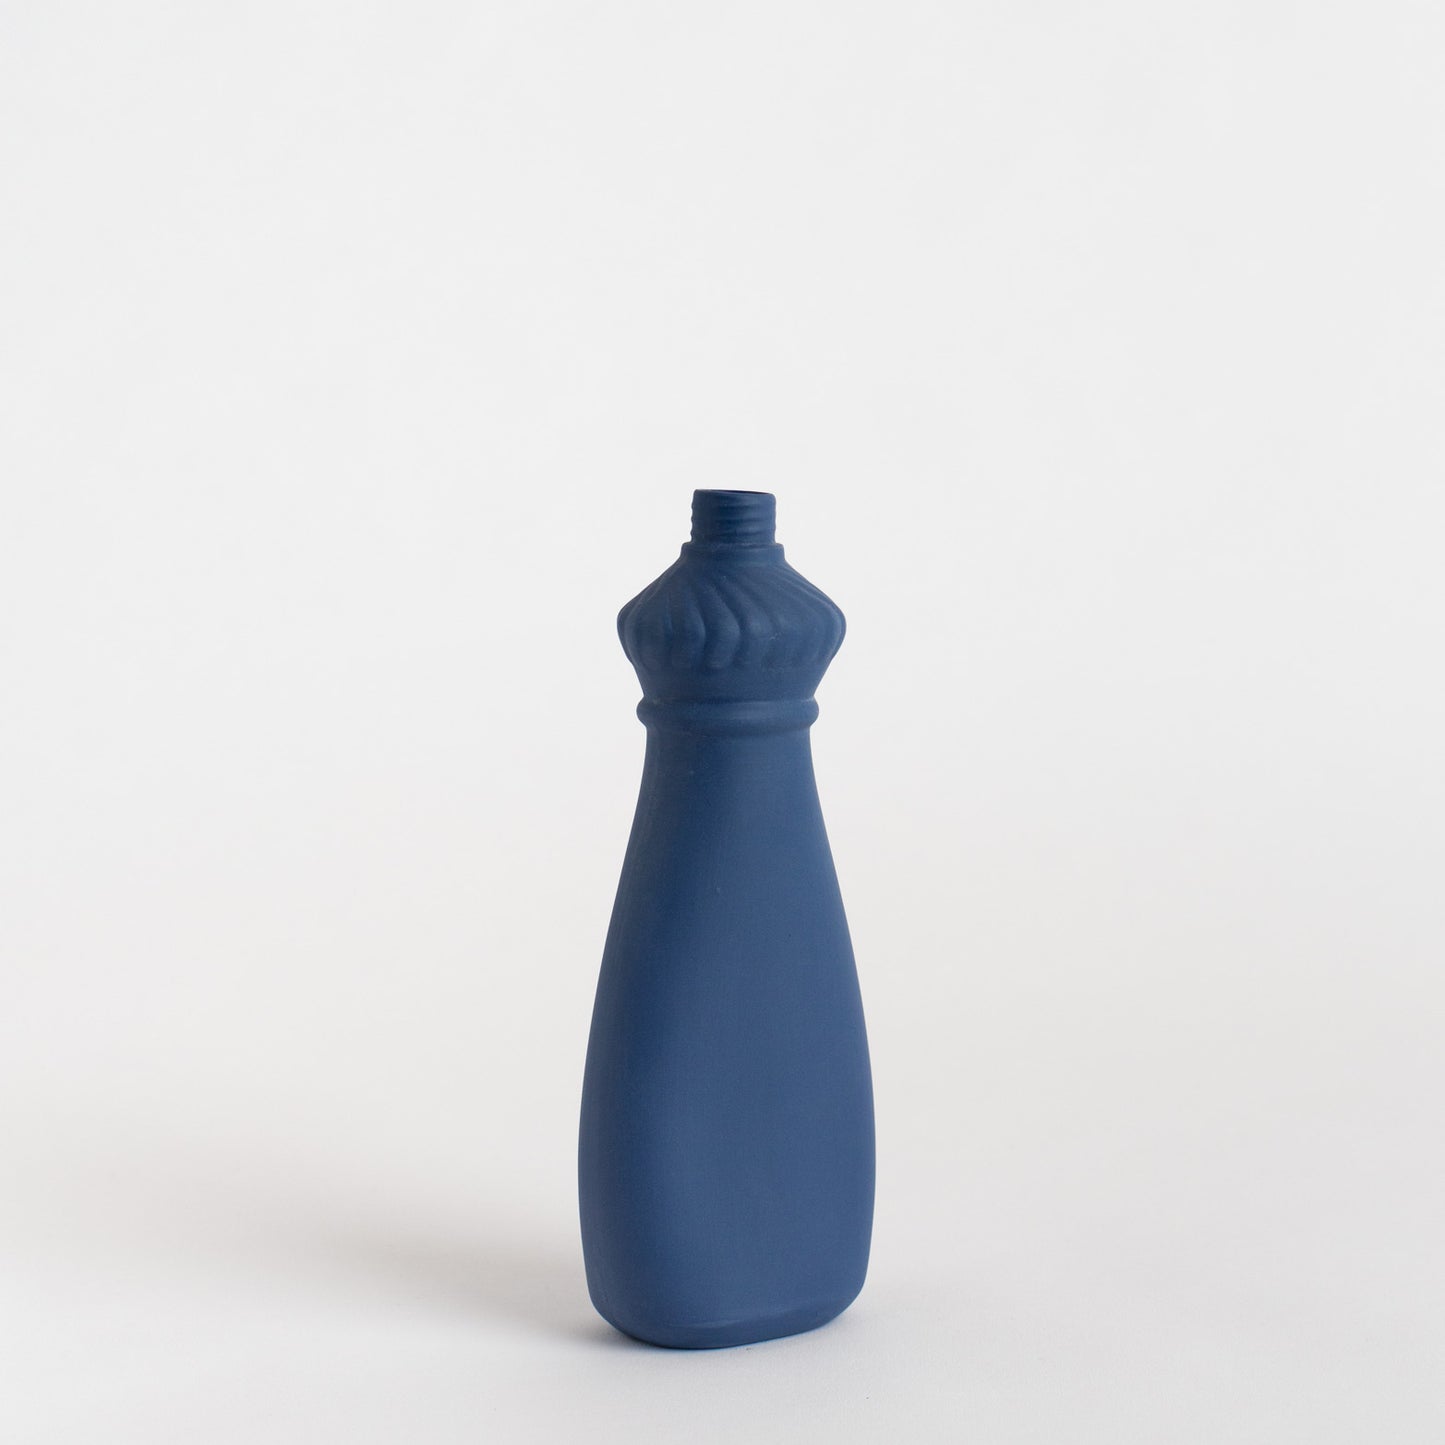 Porcelain Bottle Vase #15 - delft